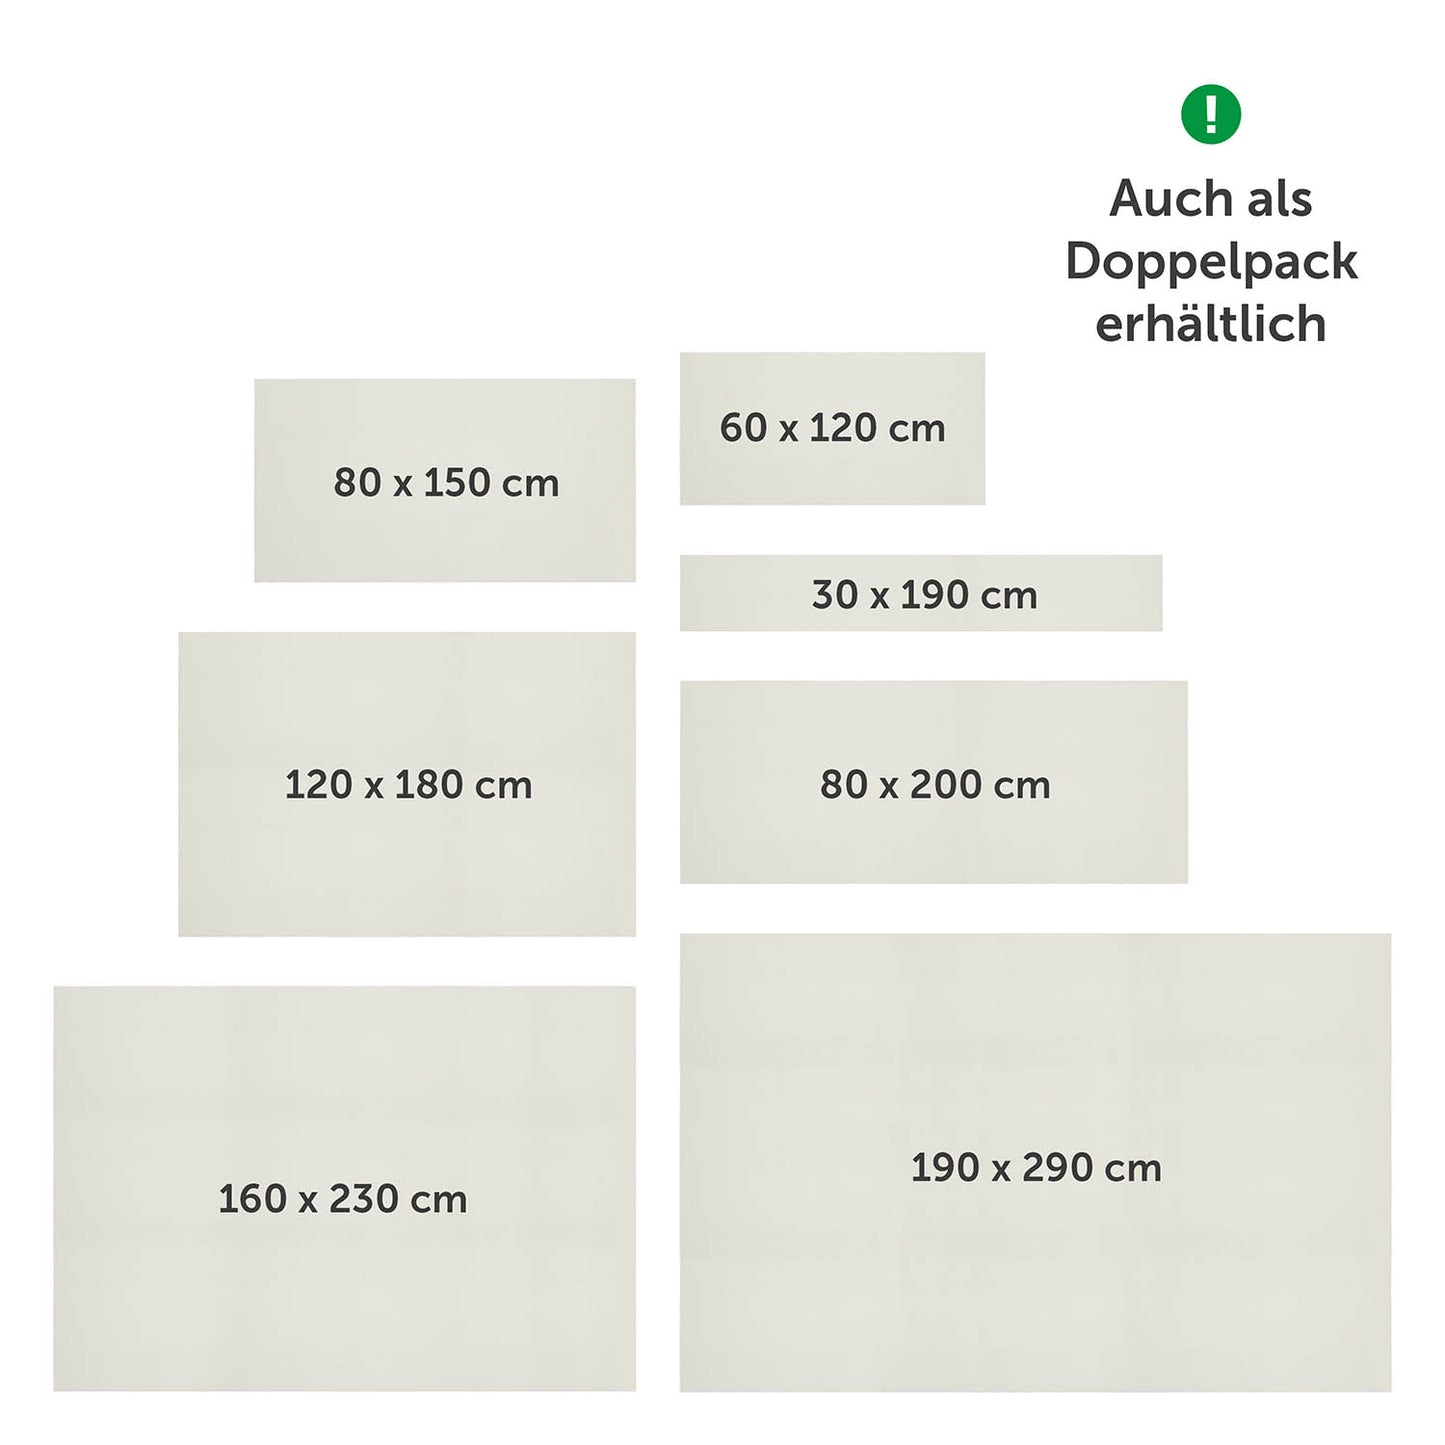 Übersicht verschiedener Größen von Antirutschmatten von blumtal, verfügbar in Einzel- und Doppelpacks, mit Maßangaben von 30x190 cm bis 190x290 cm.